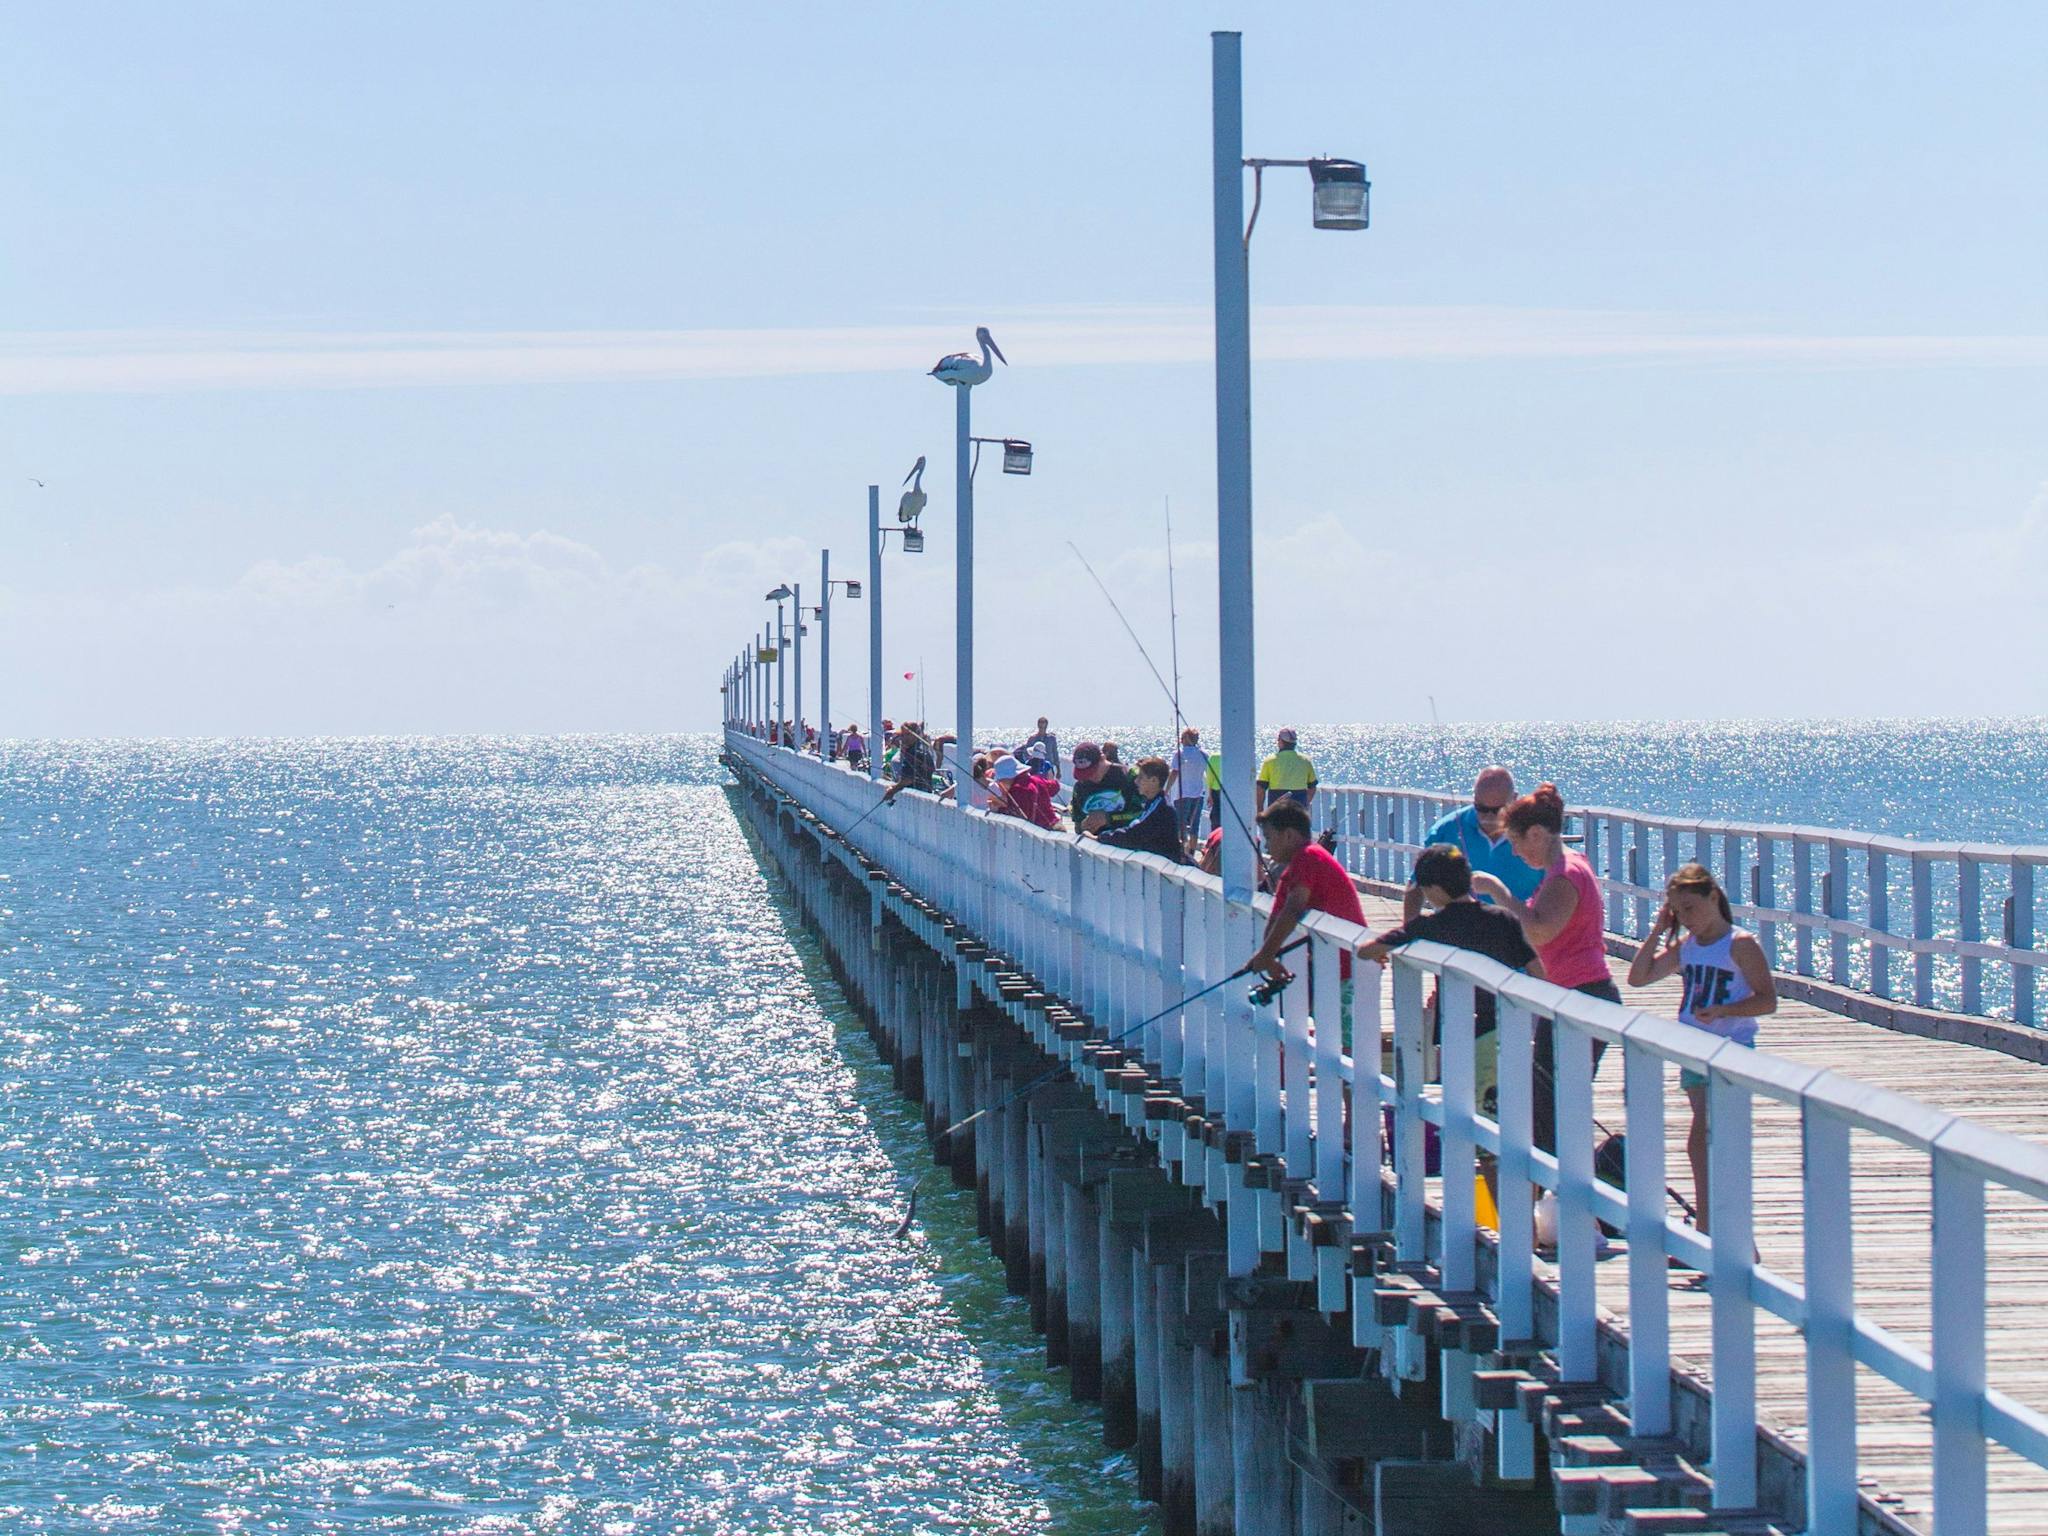 Urangan Pier Attraction Queensland